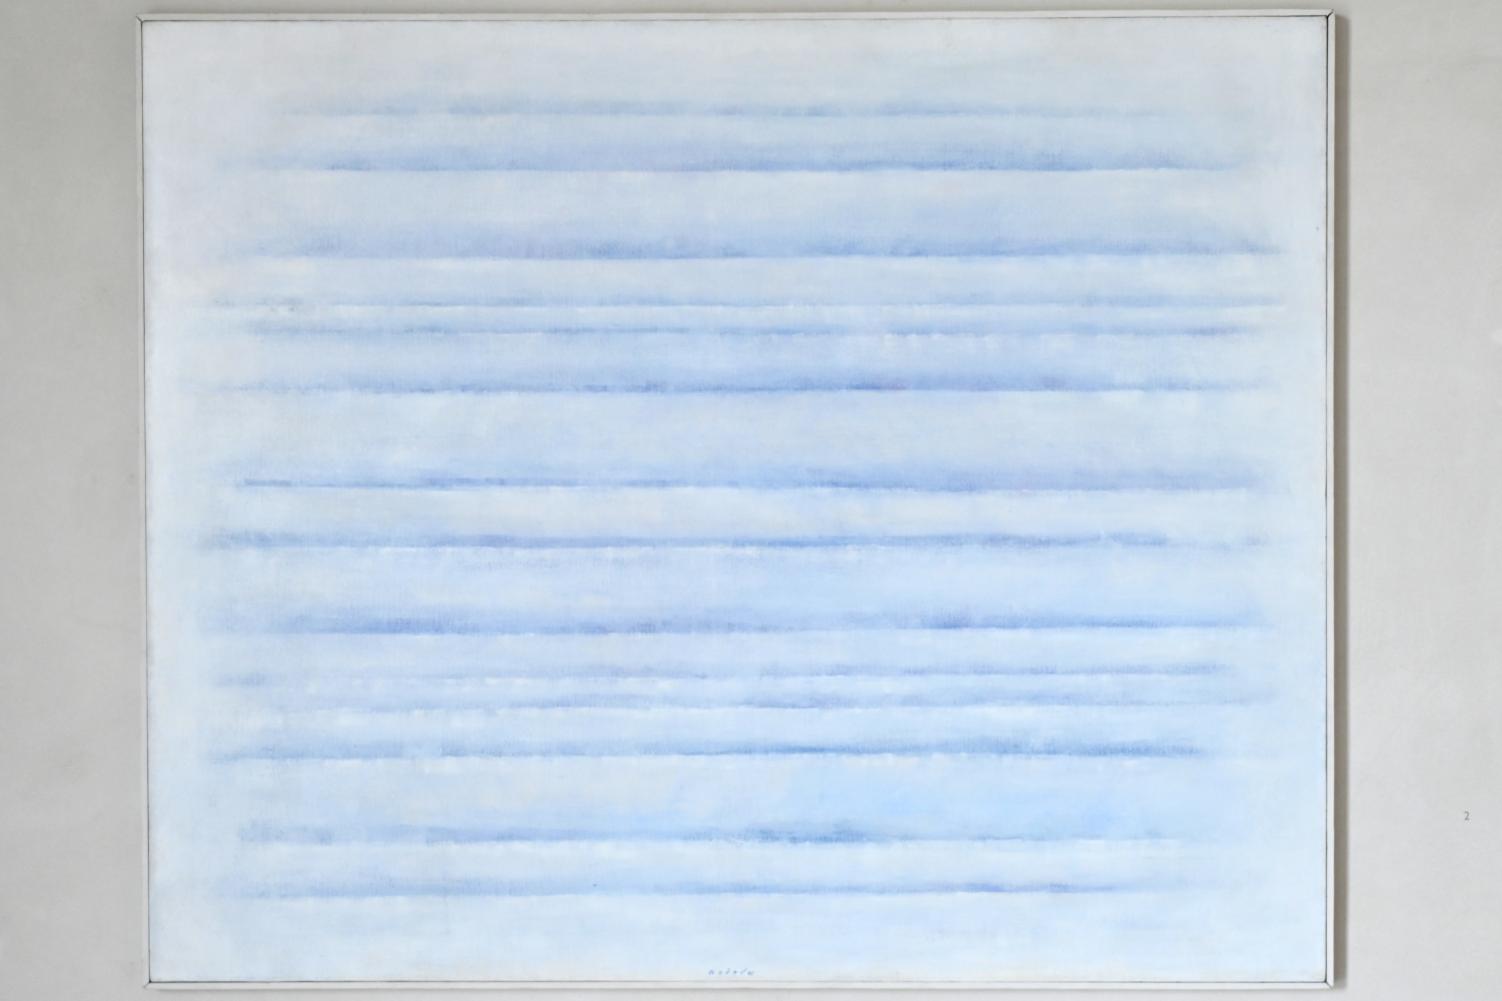 Václav Boštík (1941–1978), Fissionnement en bleu I (Riffelung in Blau), Köln, Museum Kolumba, Ausstellung "In die Weite – Aspekte jüdischen Lebens in Deutschland" vom 15.09.2021-15.08.2022, Raum 12, 1970